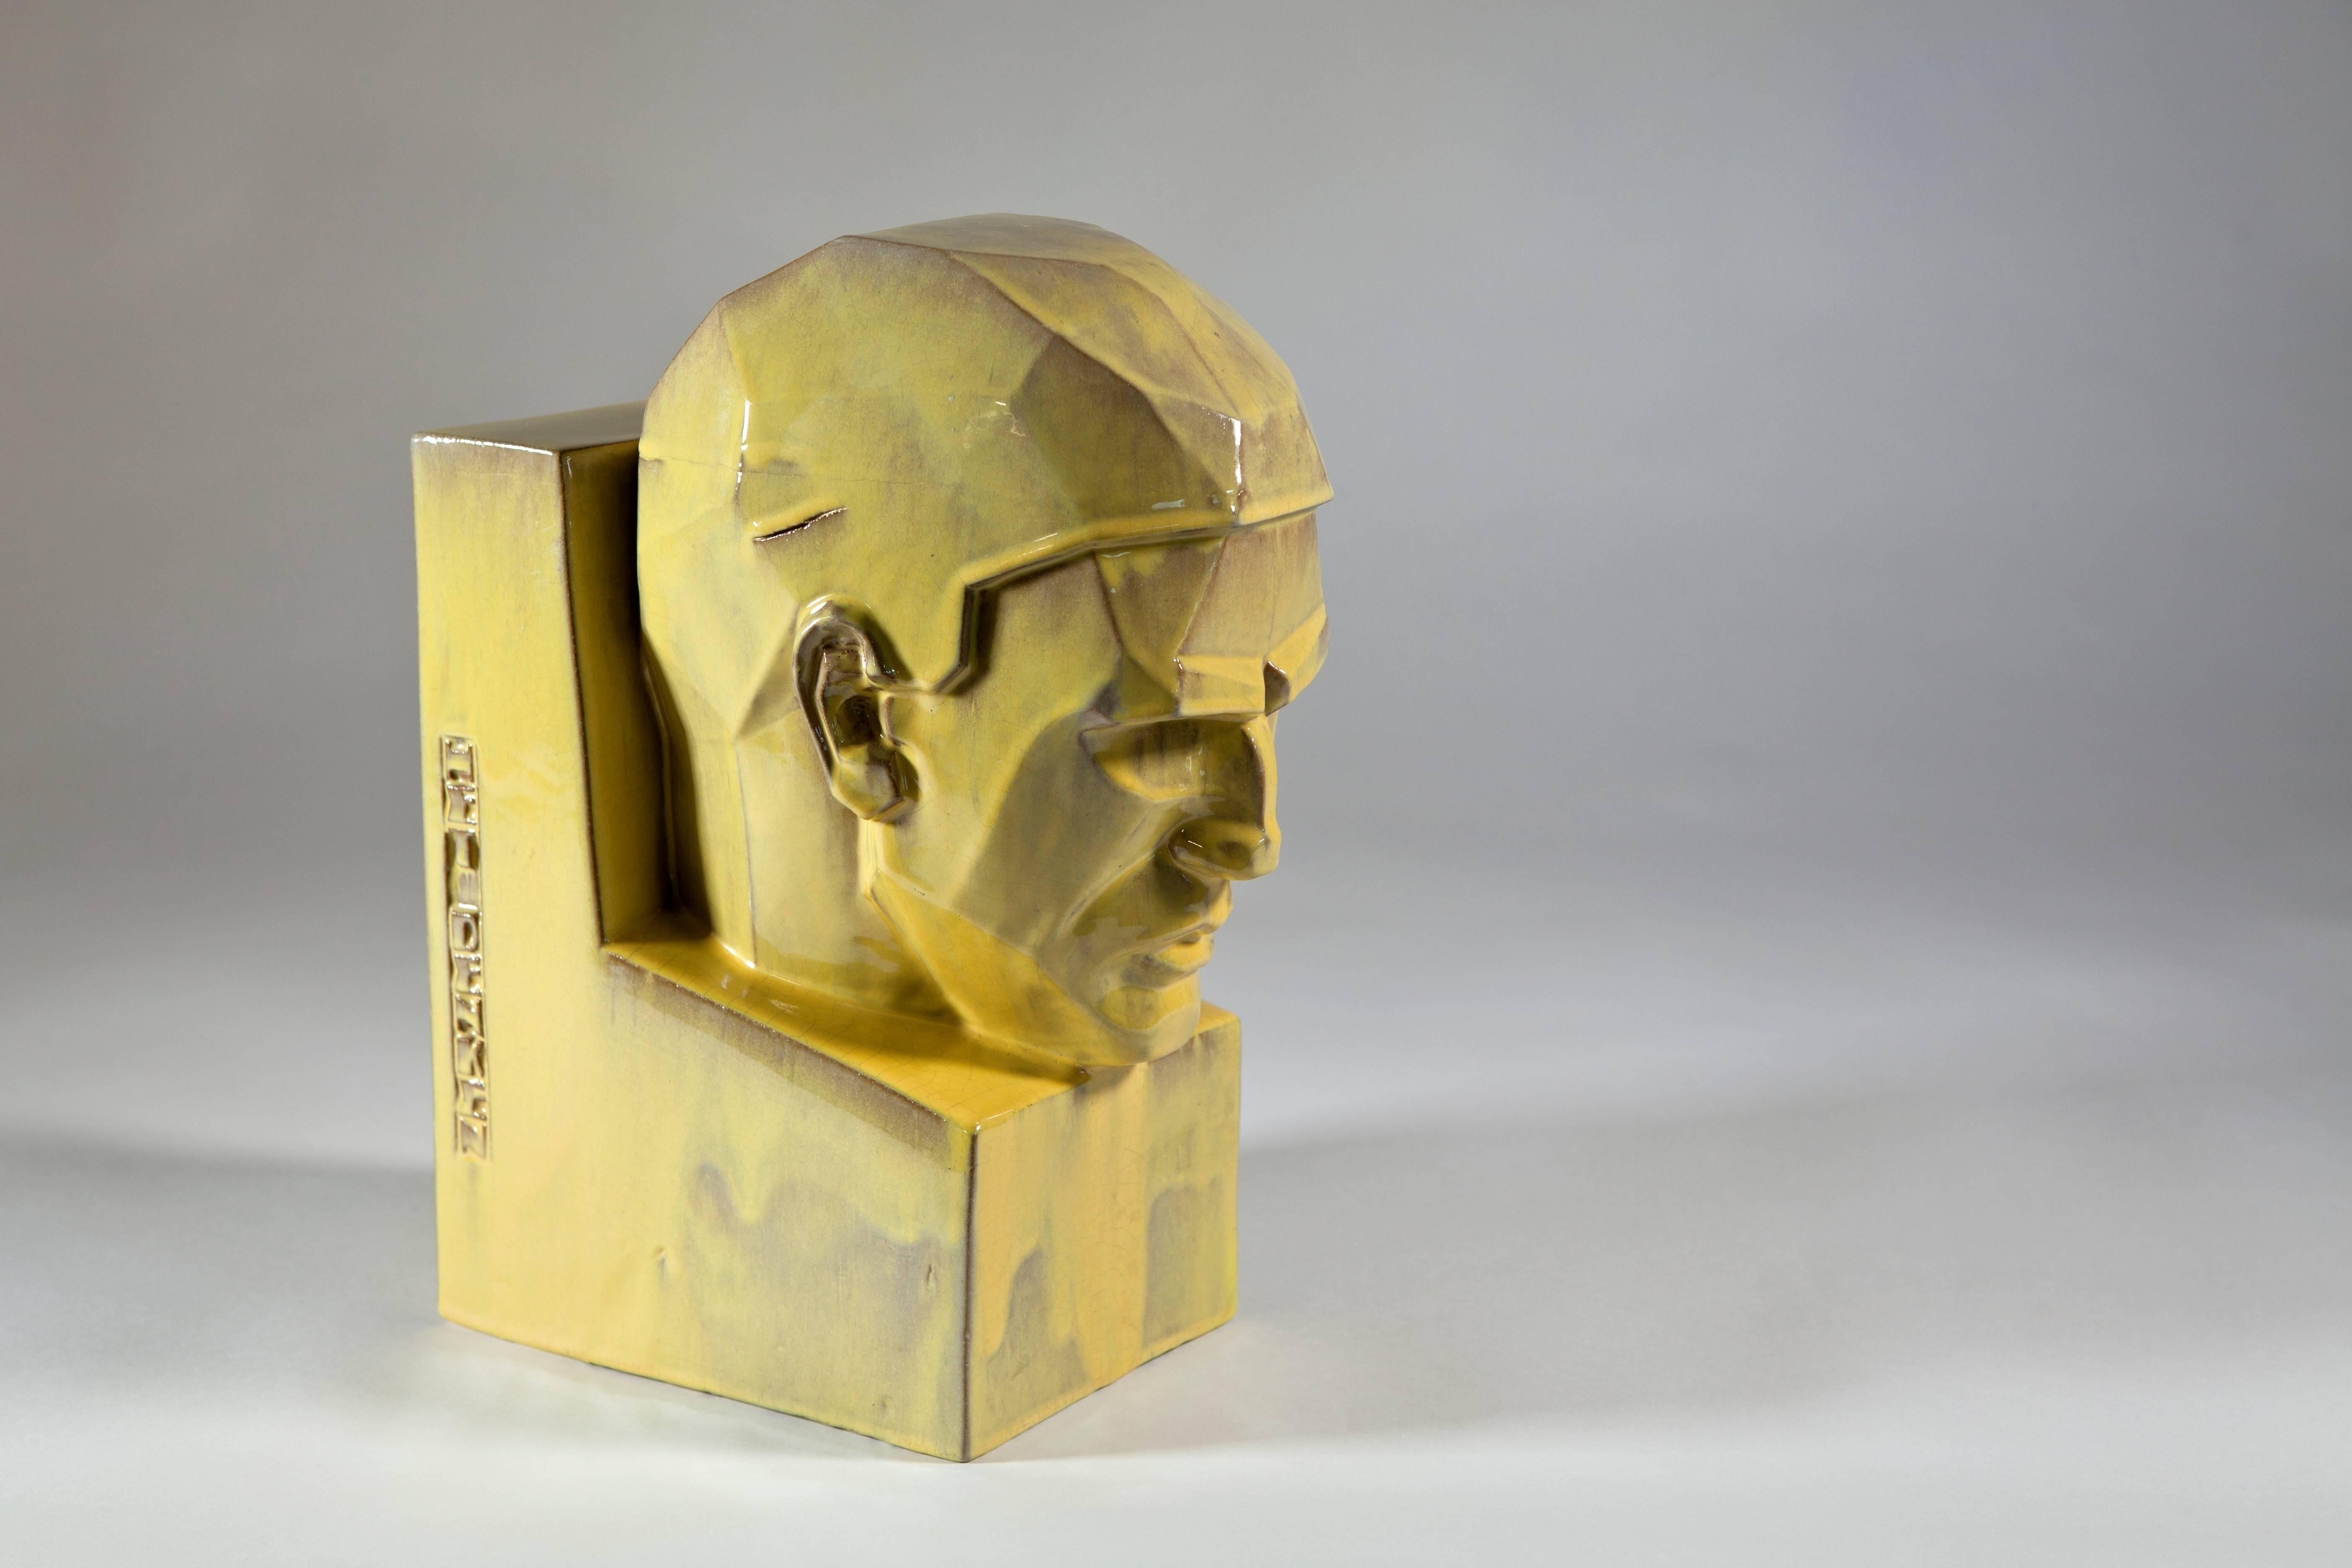 Ceramic Art Deco Sculpture 'Thinking' 'Het Denken', Willem Coenraad Brouwer, circa 1930 For Sale